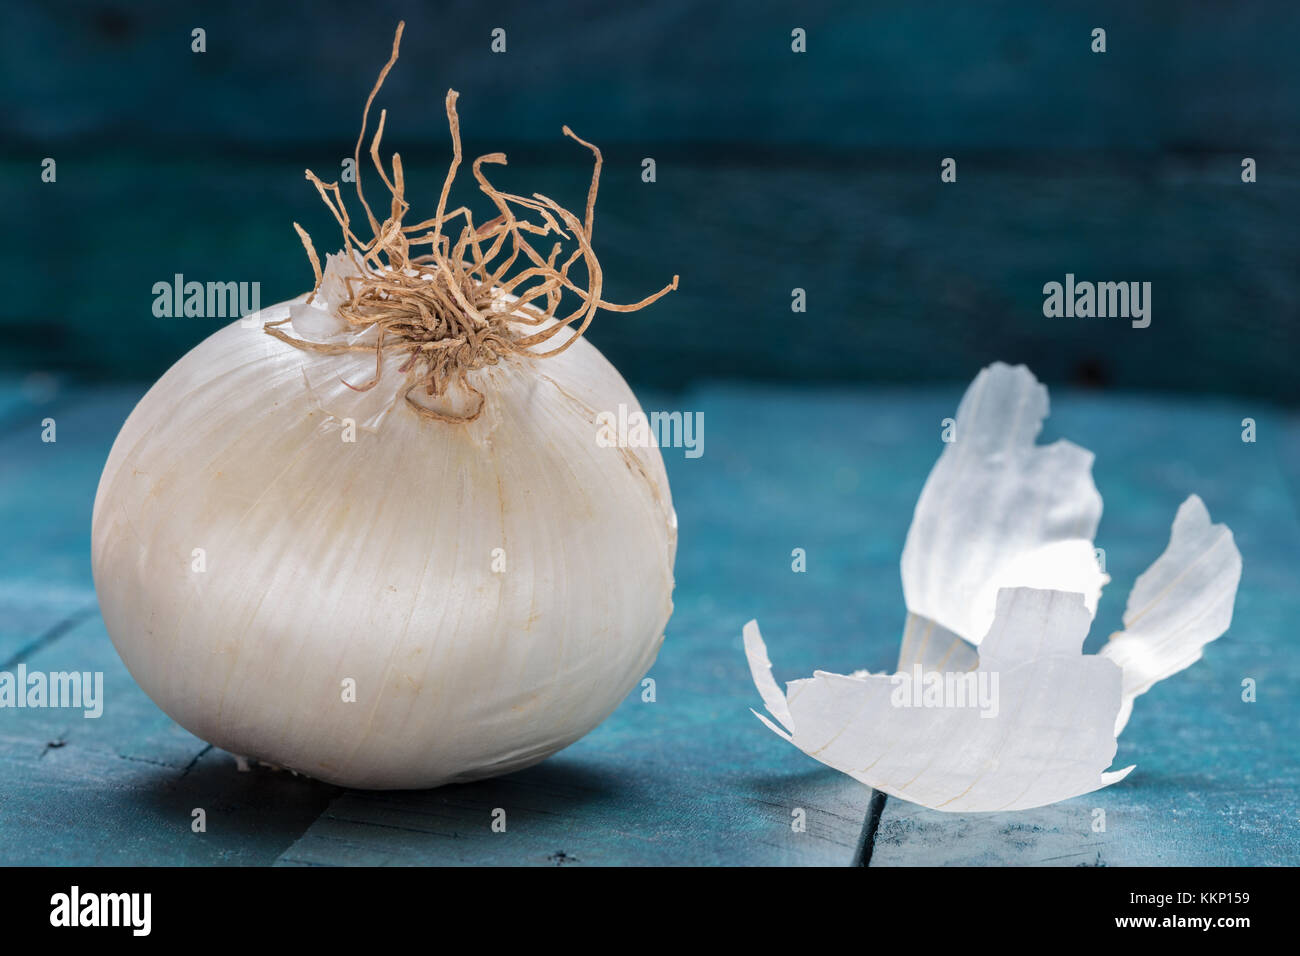 Weiße Zwiebel auf Benzin - farbige Holz- Hintergrund. Stockfoto